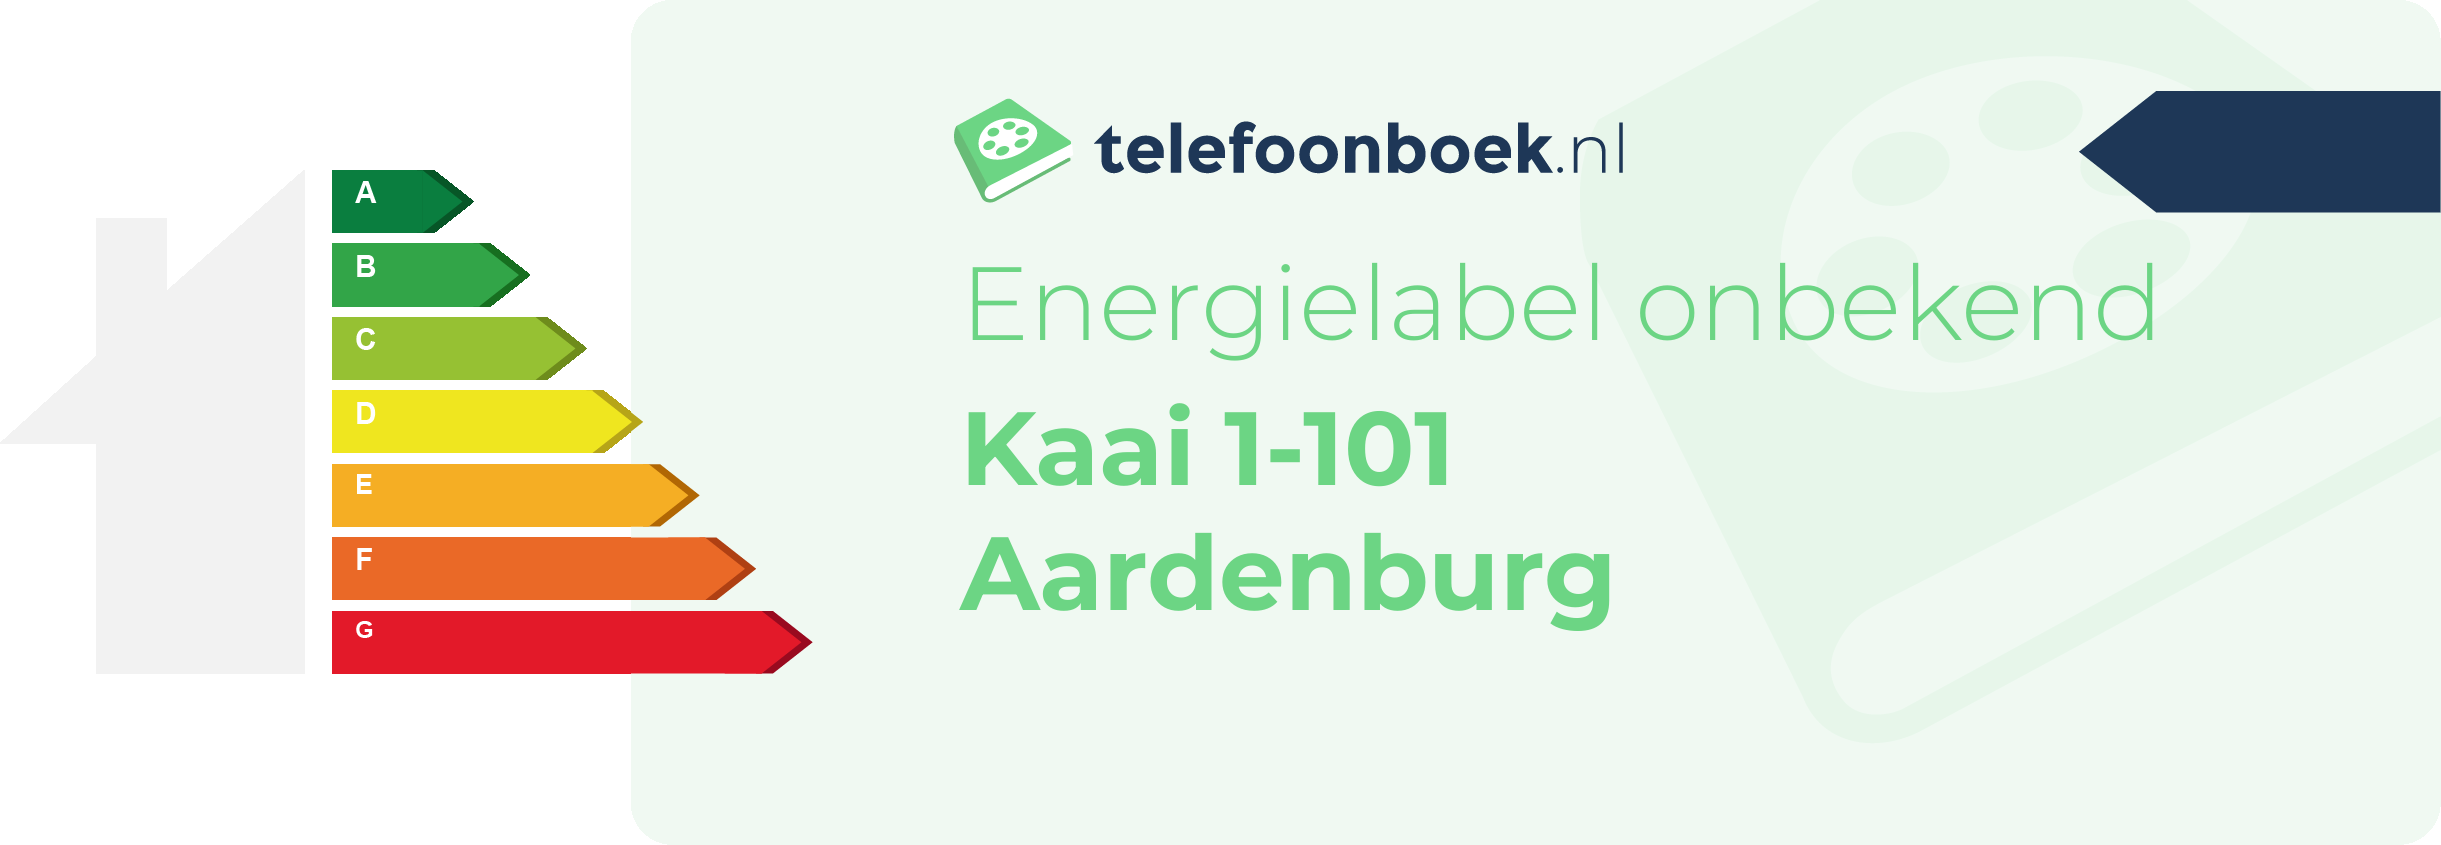 Energielabel Kaai 1-101 Aardenburg